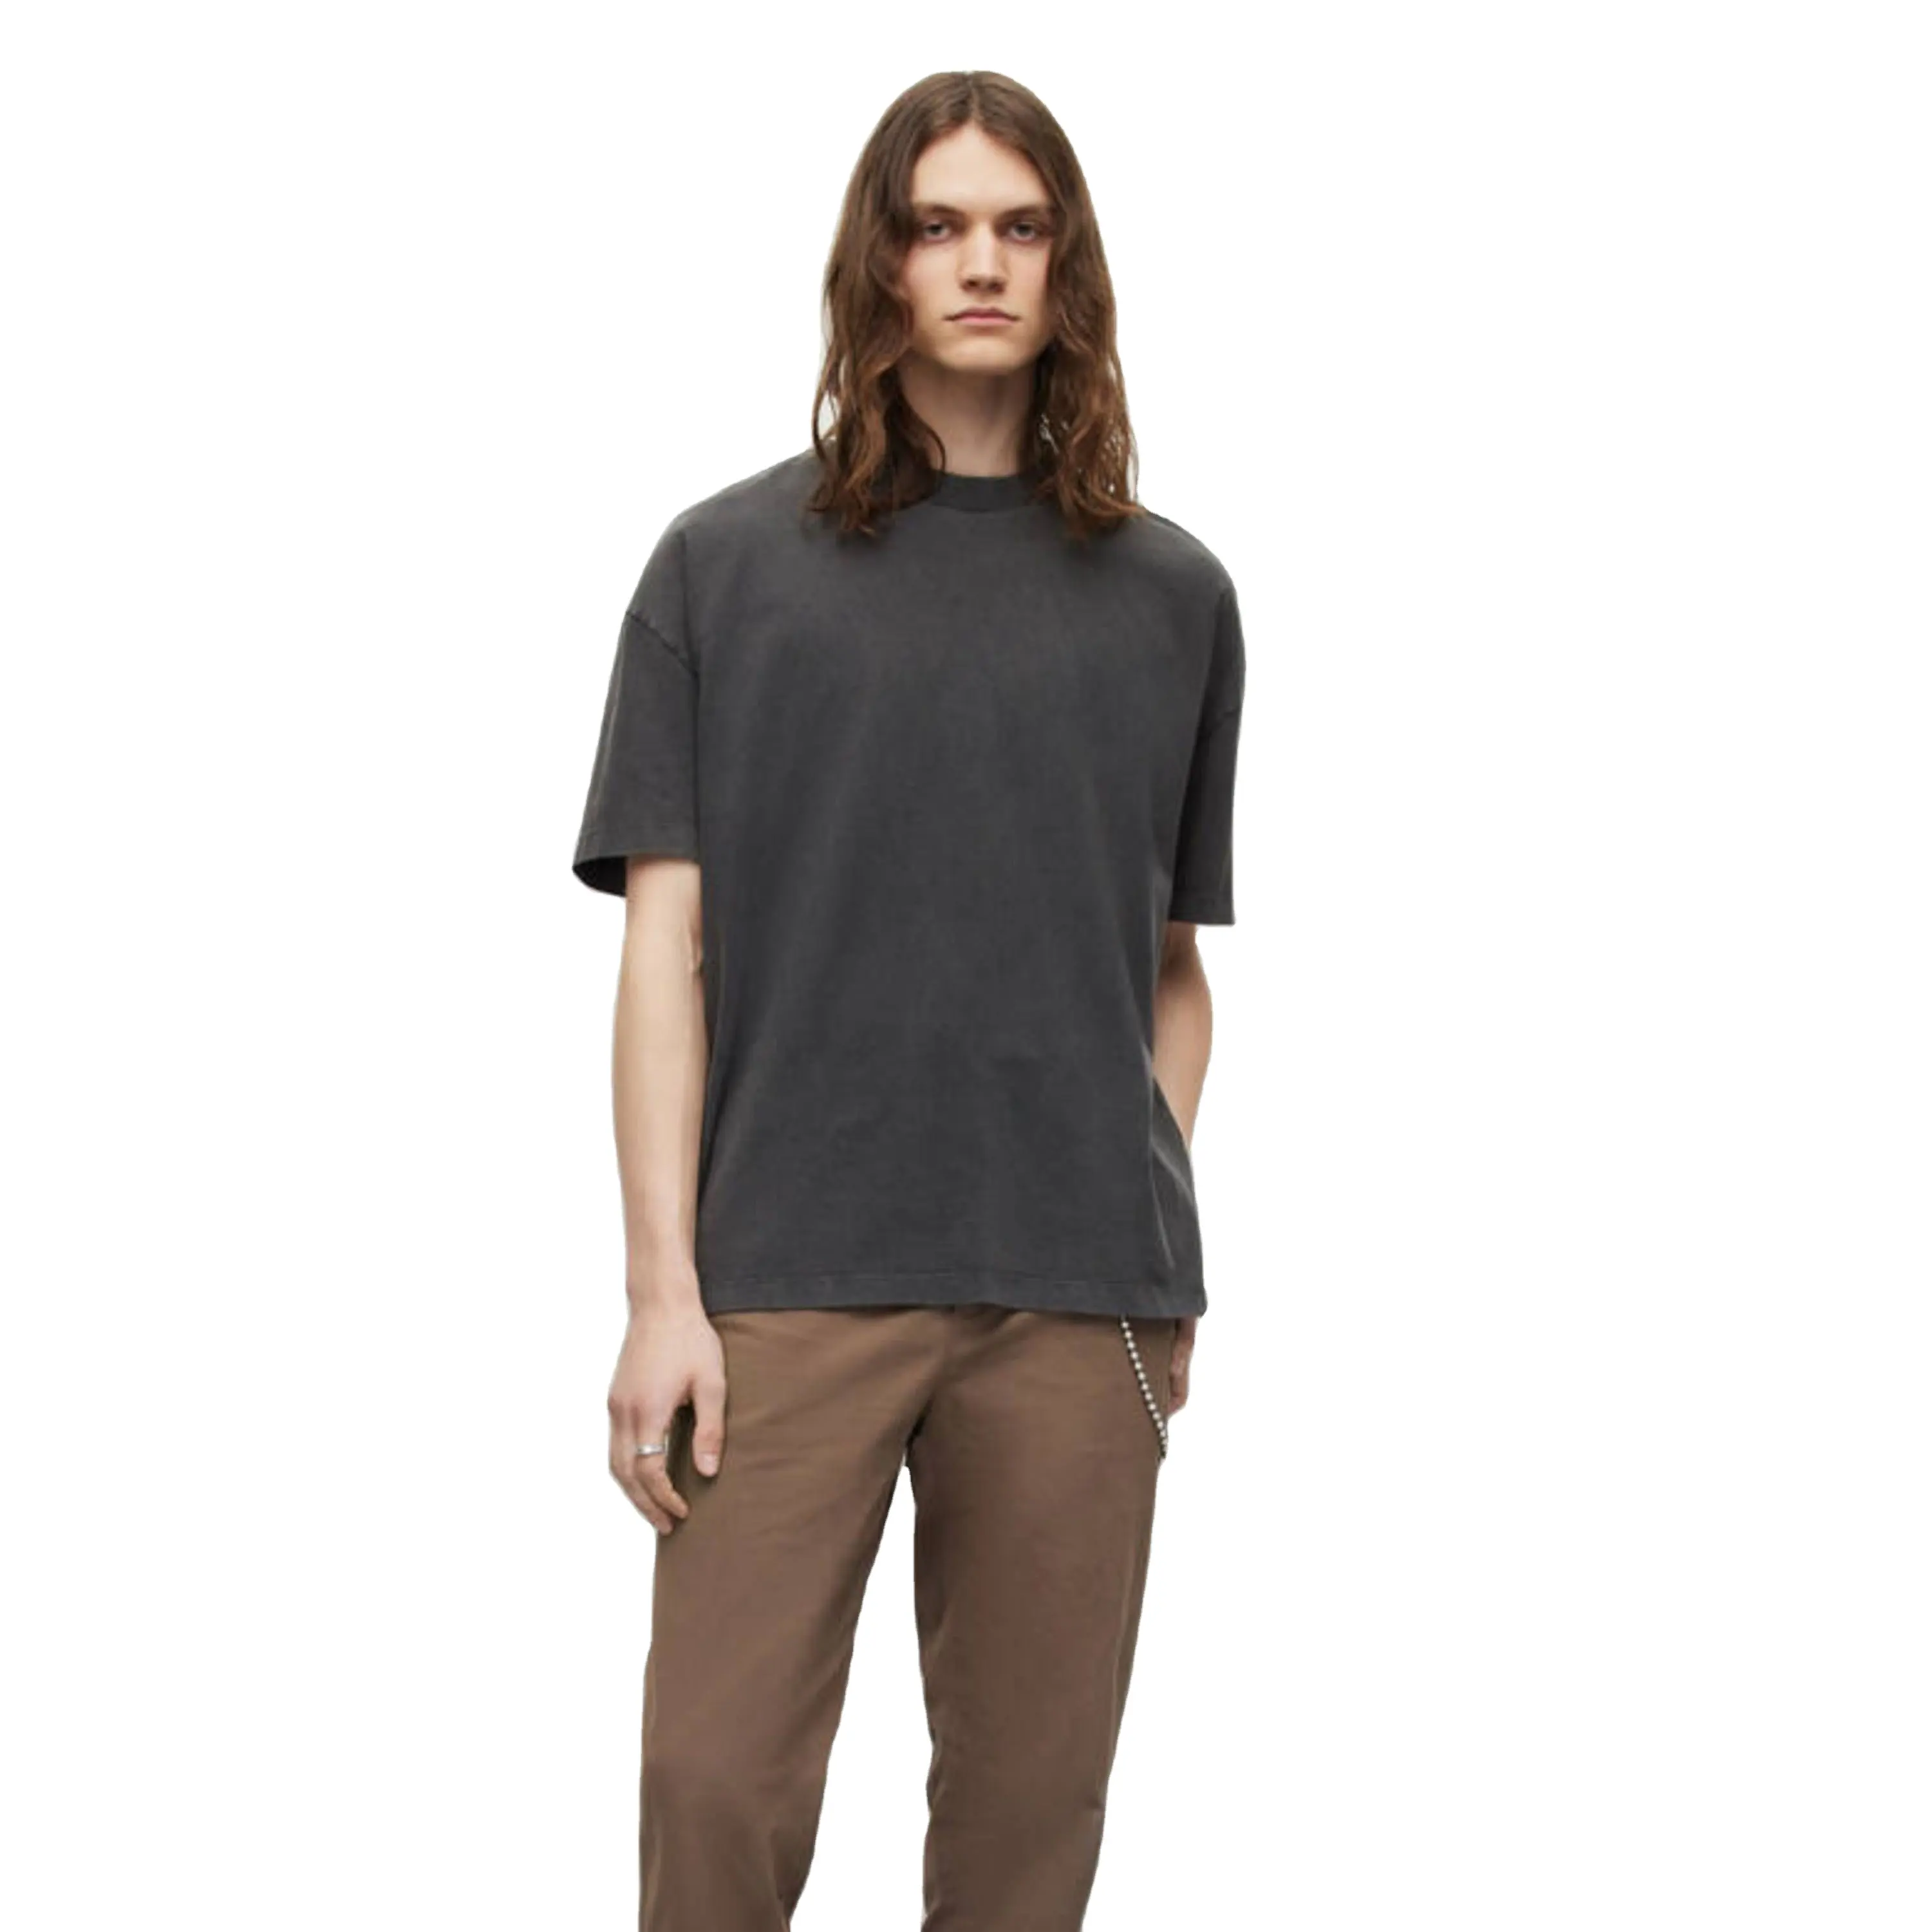 Özel baskı T-shirt erkek Tee gömlek kalın yaka % 100% pamuk T Shirt ağır düz boy Mock boyun Tshirt erkekler için